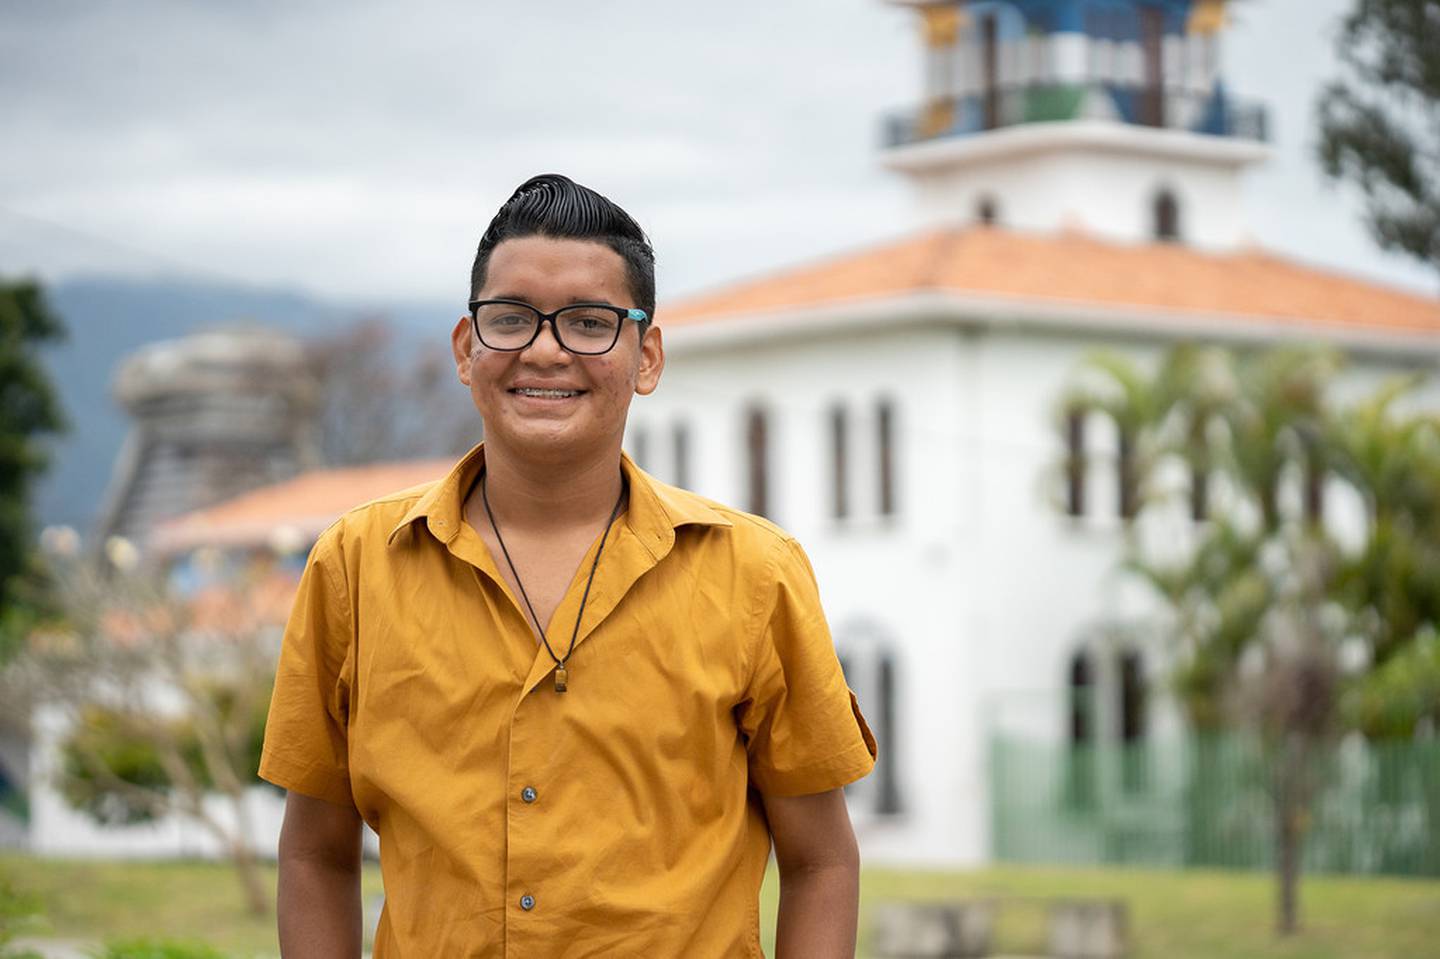 John Mora es un migrante nicaragüense que vive en Costa rica y que se alegra de haber podido encontrar en este país las oportunidades que andaba buscando para crecer en sus estudios y sus sueños profesionales